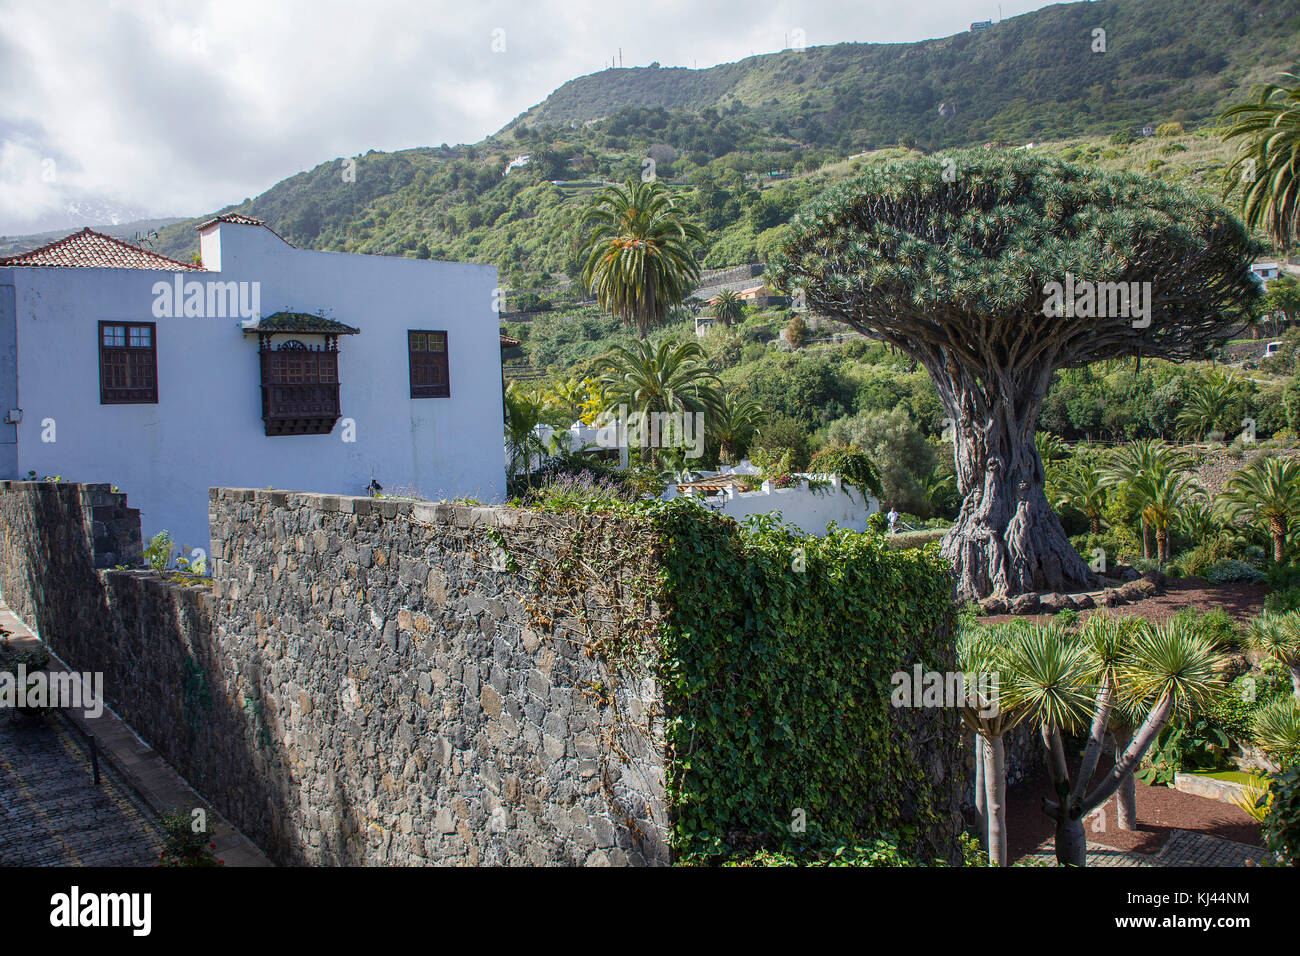 Drago milenario, il più famoso dragon tree (Dracaena draco) a isole canarie, 400 anni, villaggio a Icod de los Vinos, isole di Tenerife Foto Stock